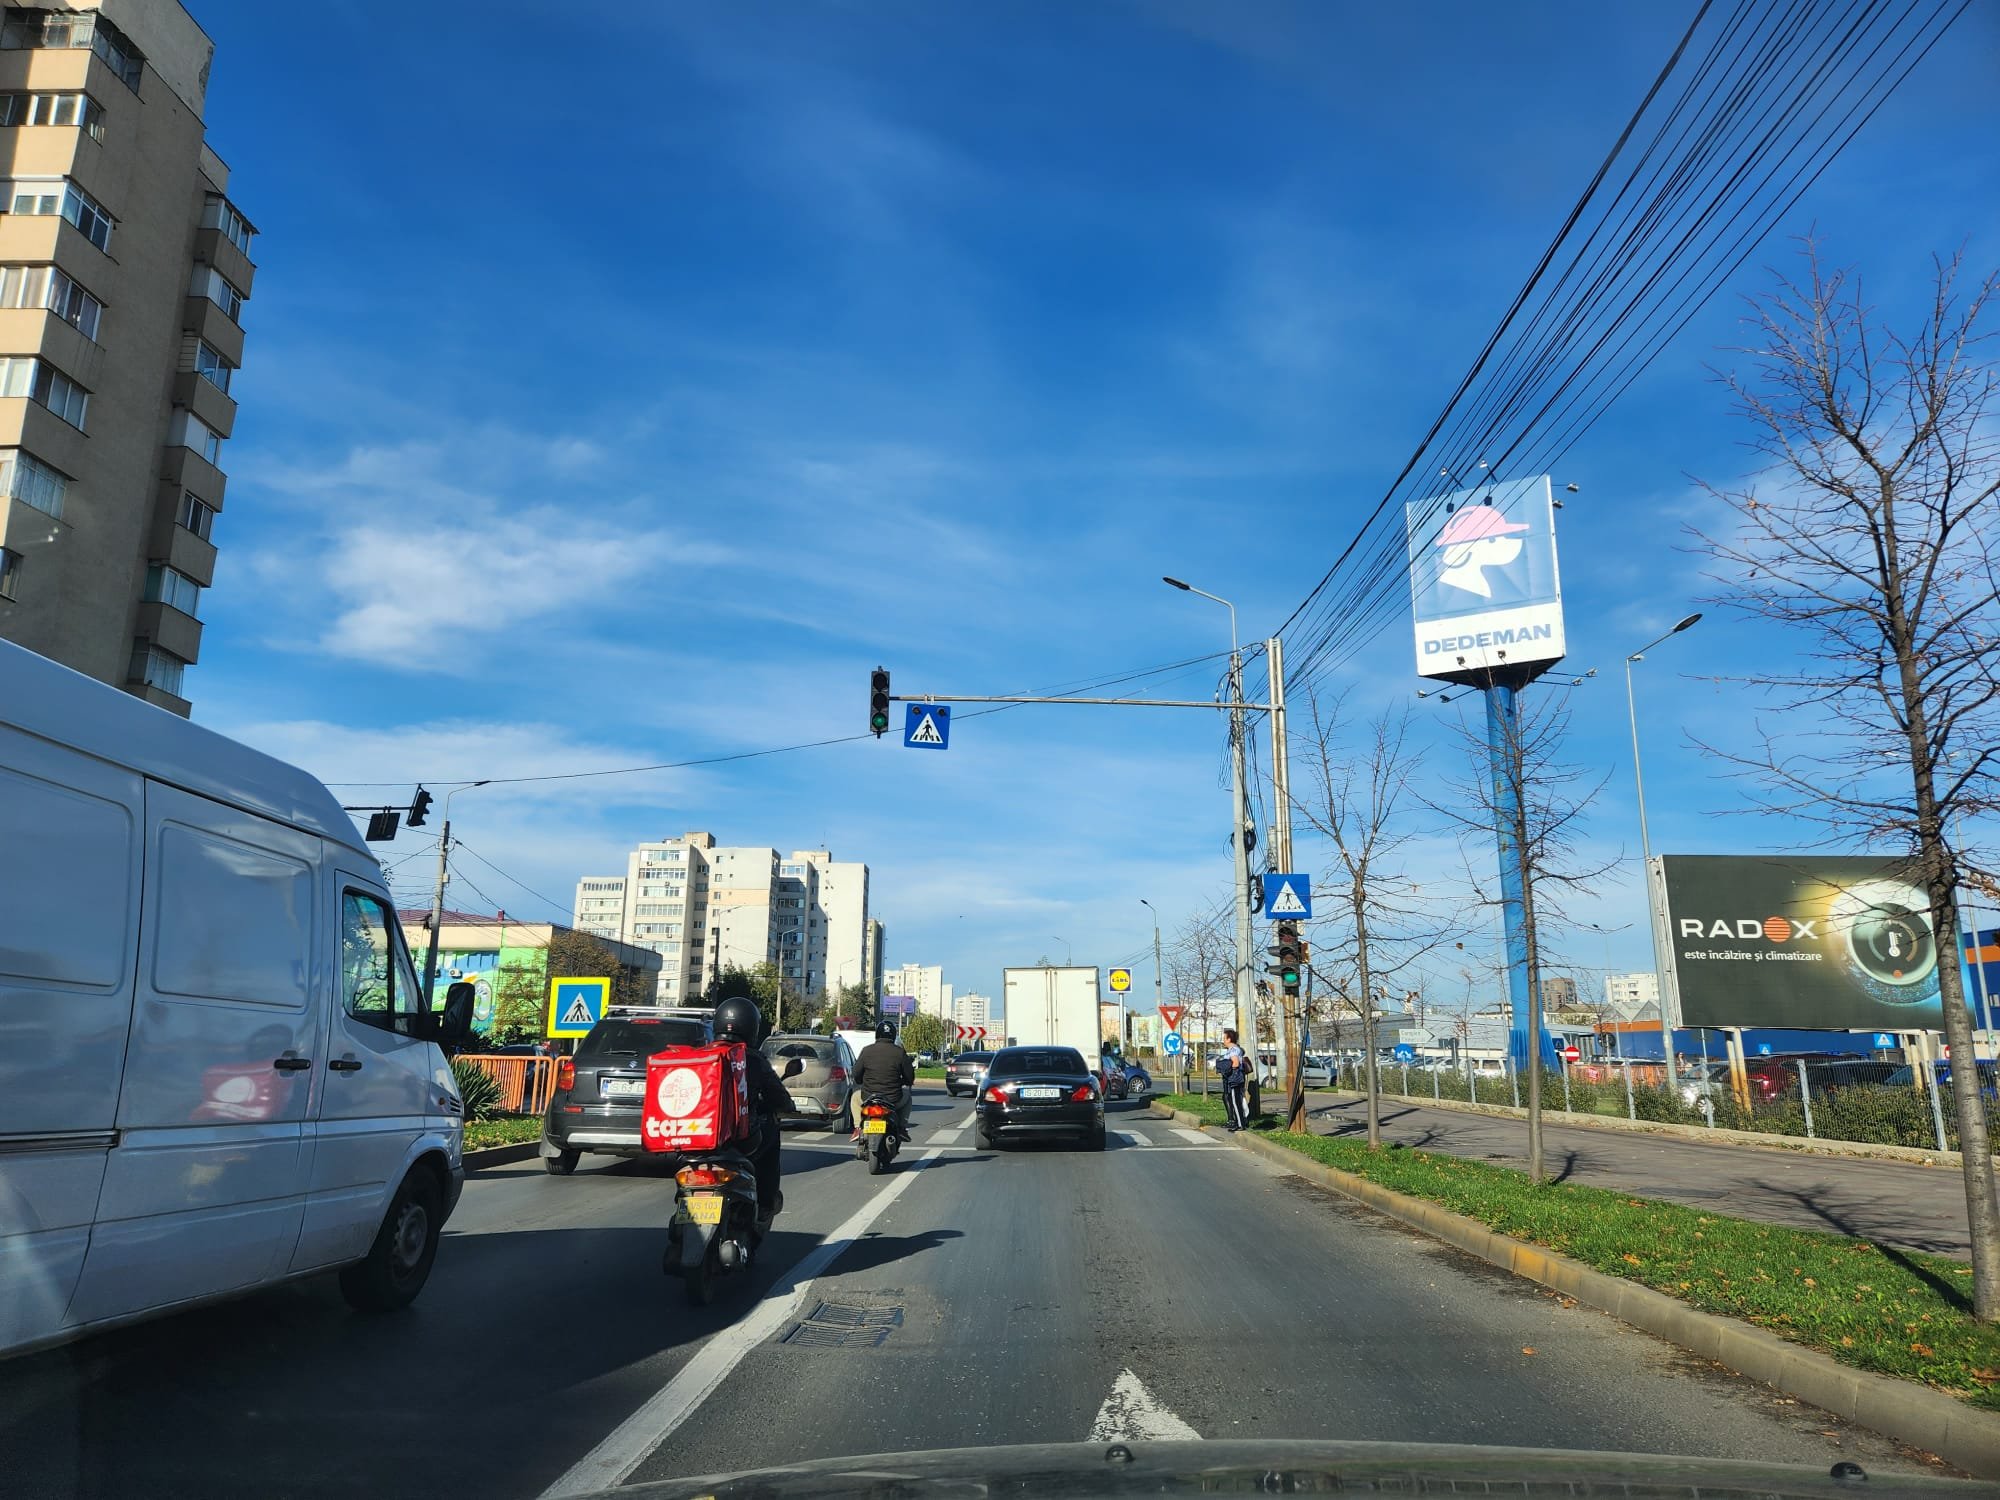  Schimbări în traficul de pe Socola: un verde intermitent la liceul CFR și un semafor la trecerea de pietoni Dedeman VIDEO